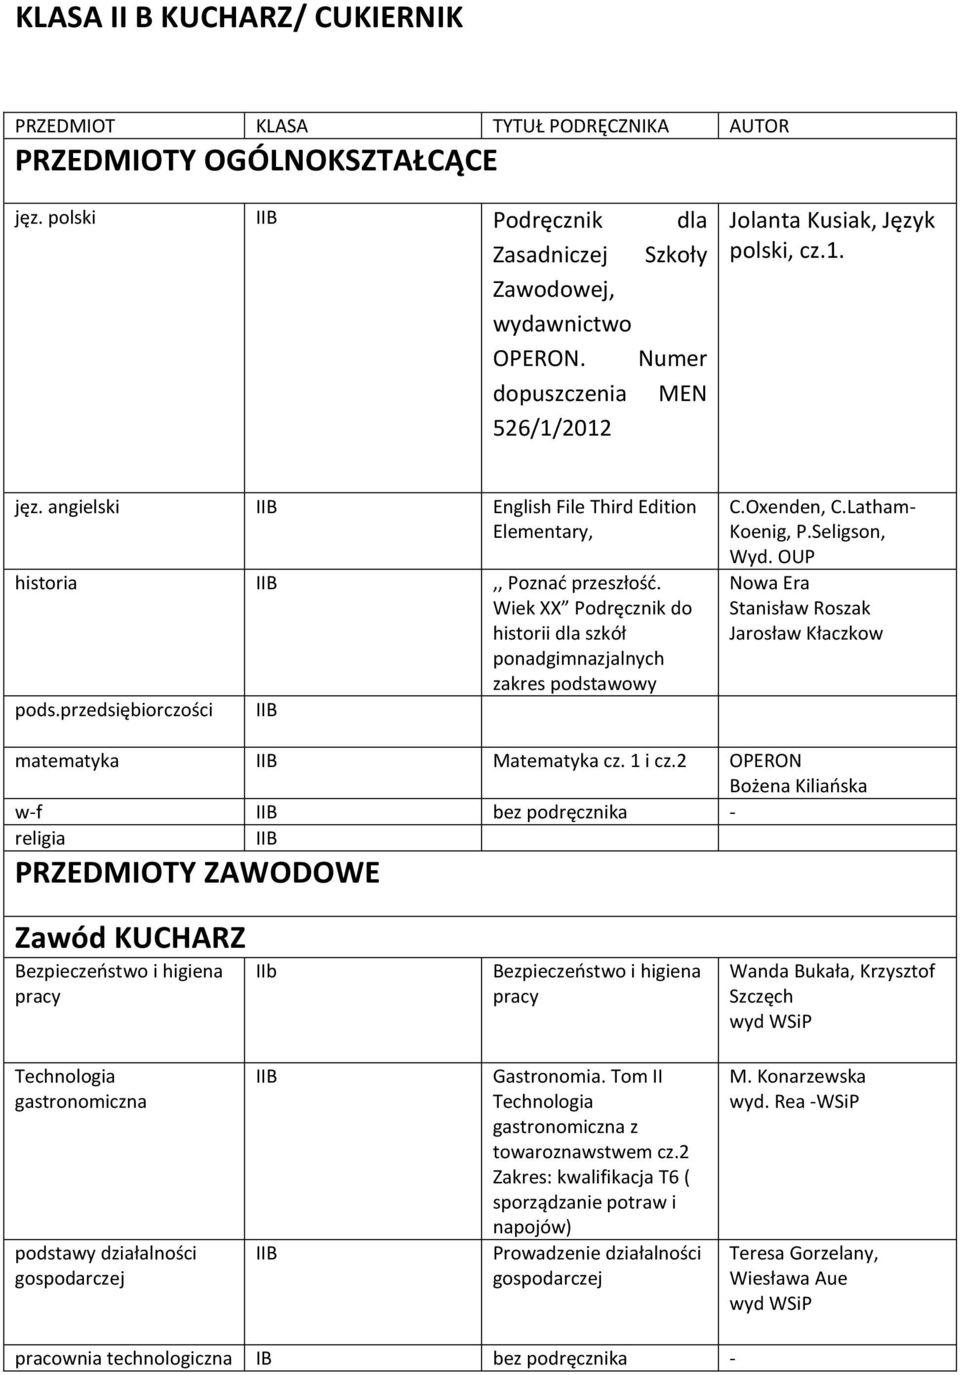 OUP Stanisław Roszak Jarosław Kłaczkow matematyka IIB Matematyka cz. 1 i cz.